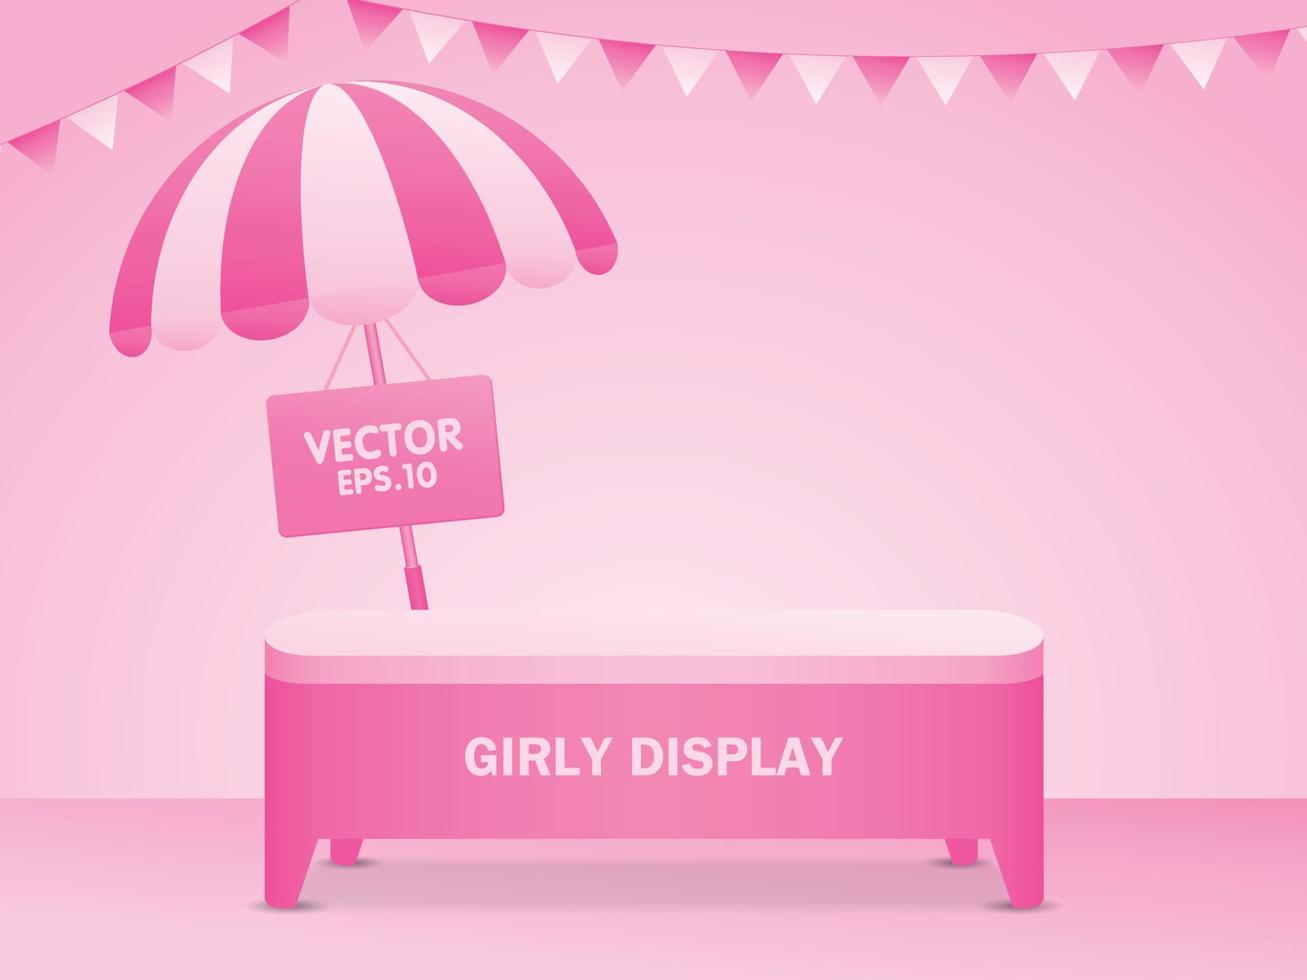 pastellrosa Hintergrund und niedlicher rosa Tisch zum Aufstellen Ihres Objekts mit gestreiftem Regenschirm und dreieckiger Schienenflagge vektor